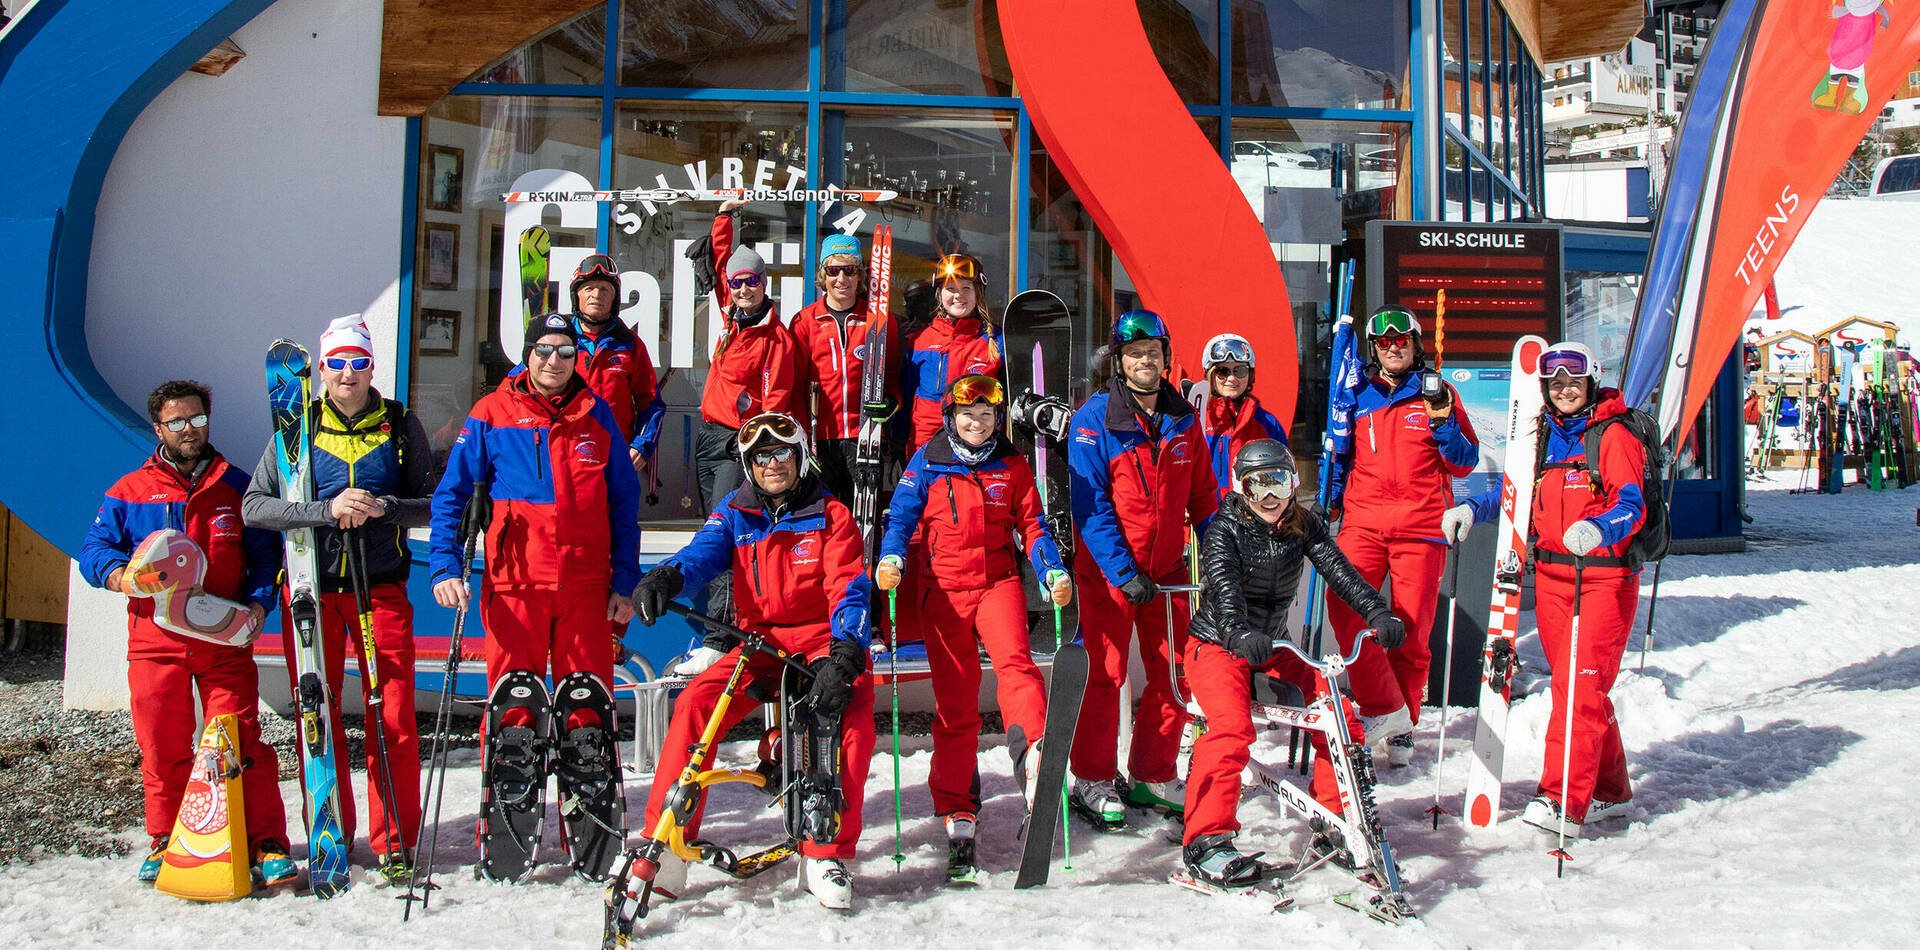 Our Team
Ski school Galtür 